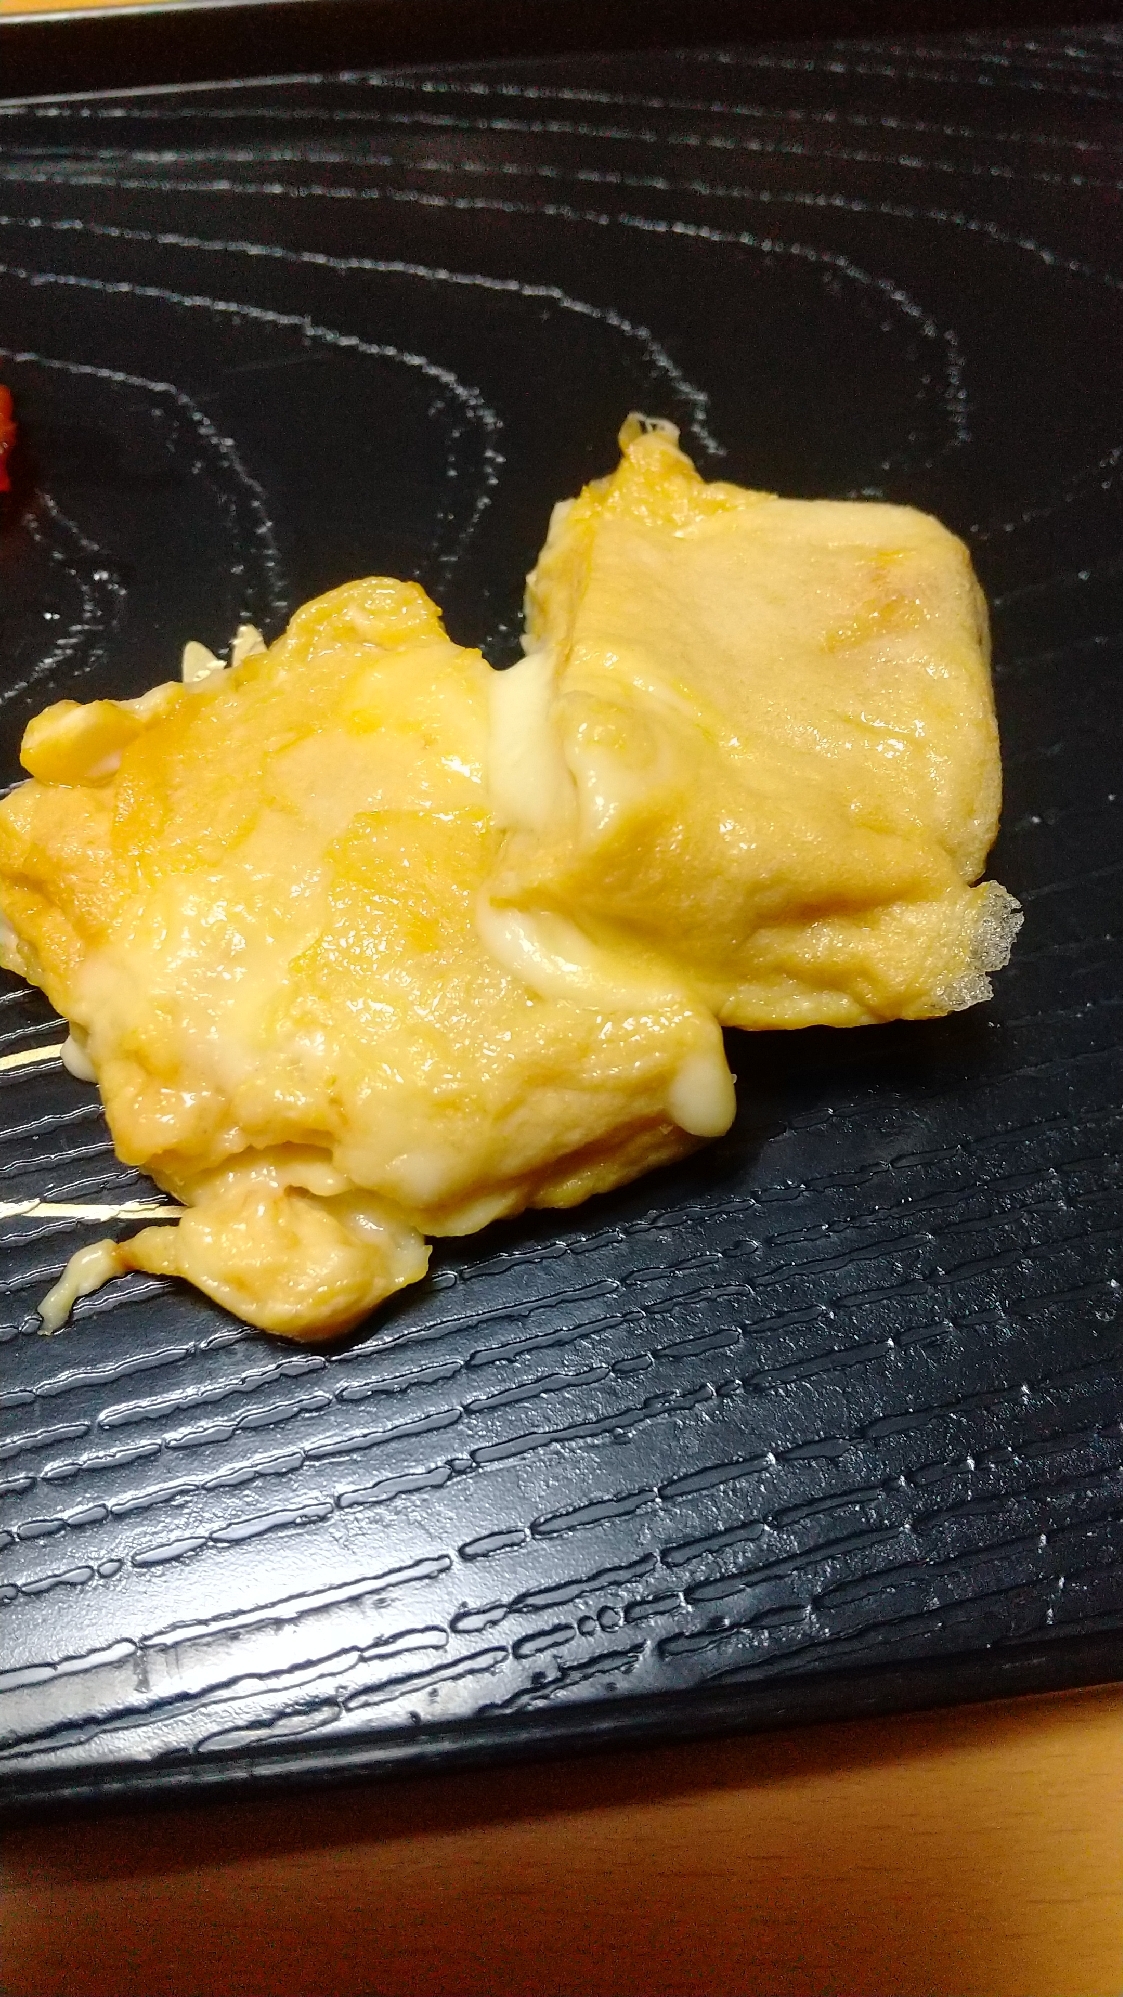 チーズ入り卵焼き